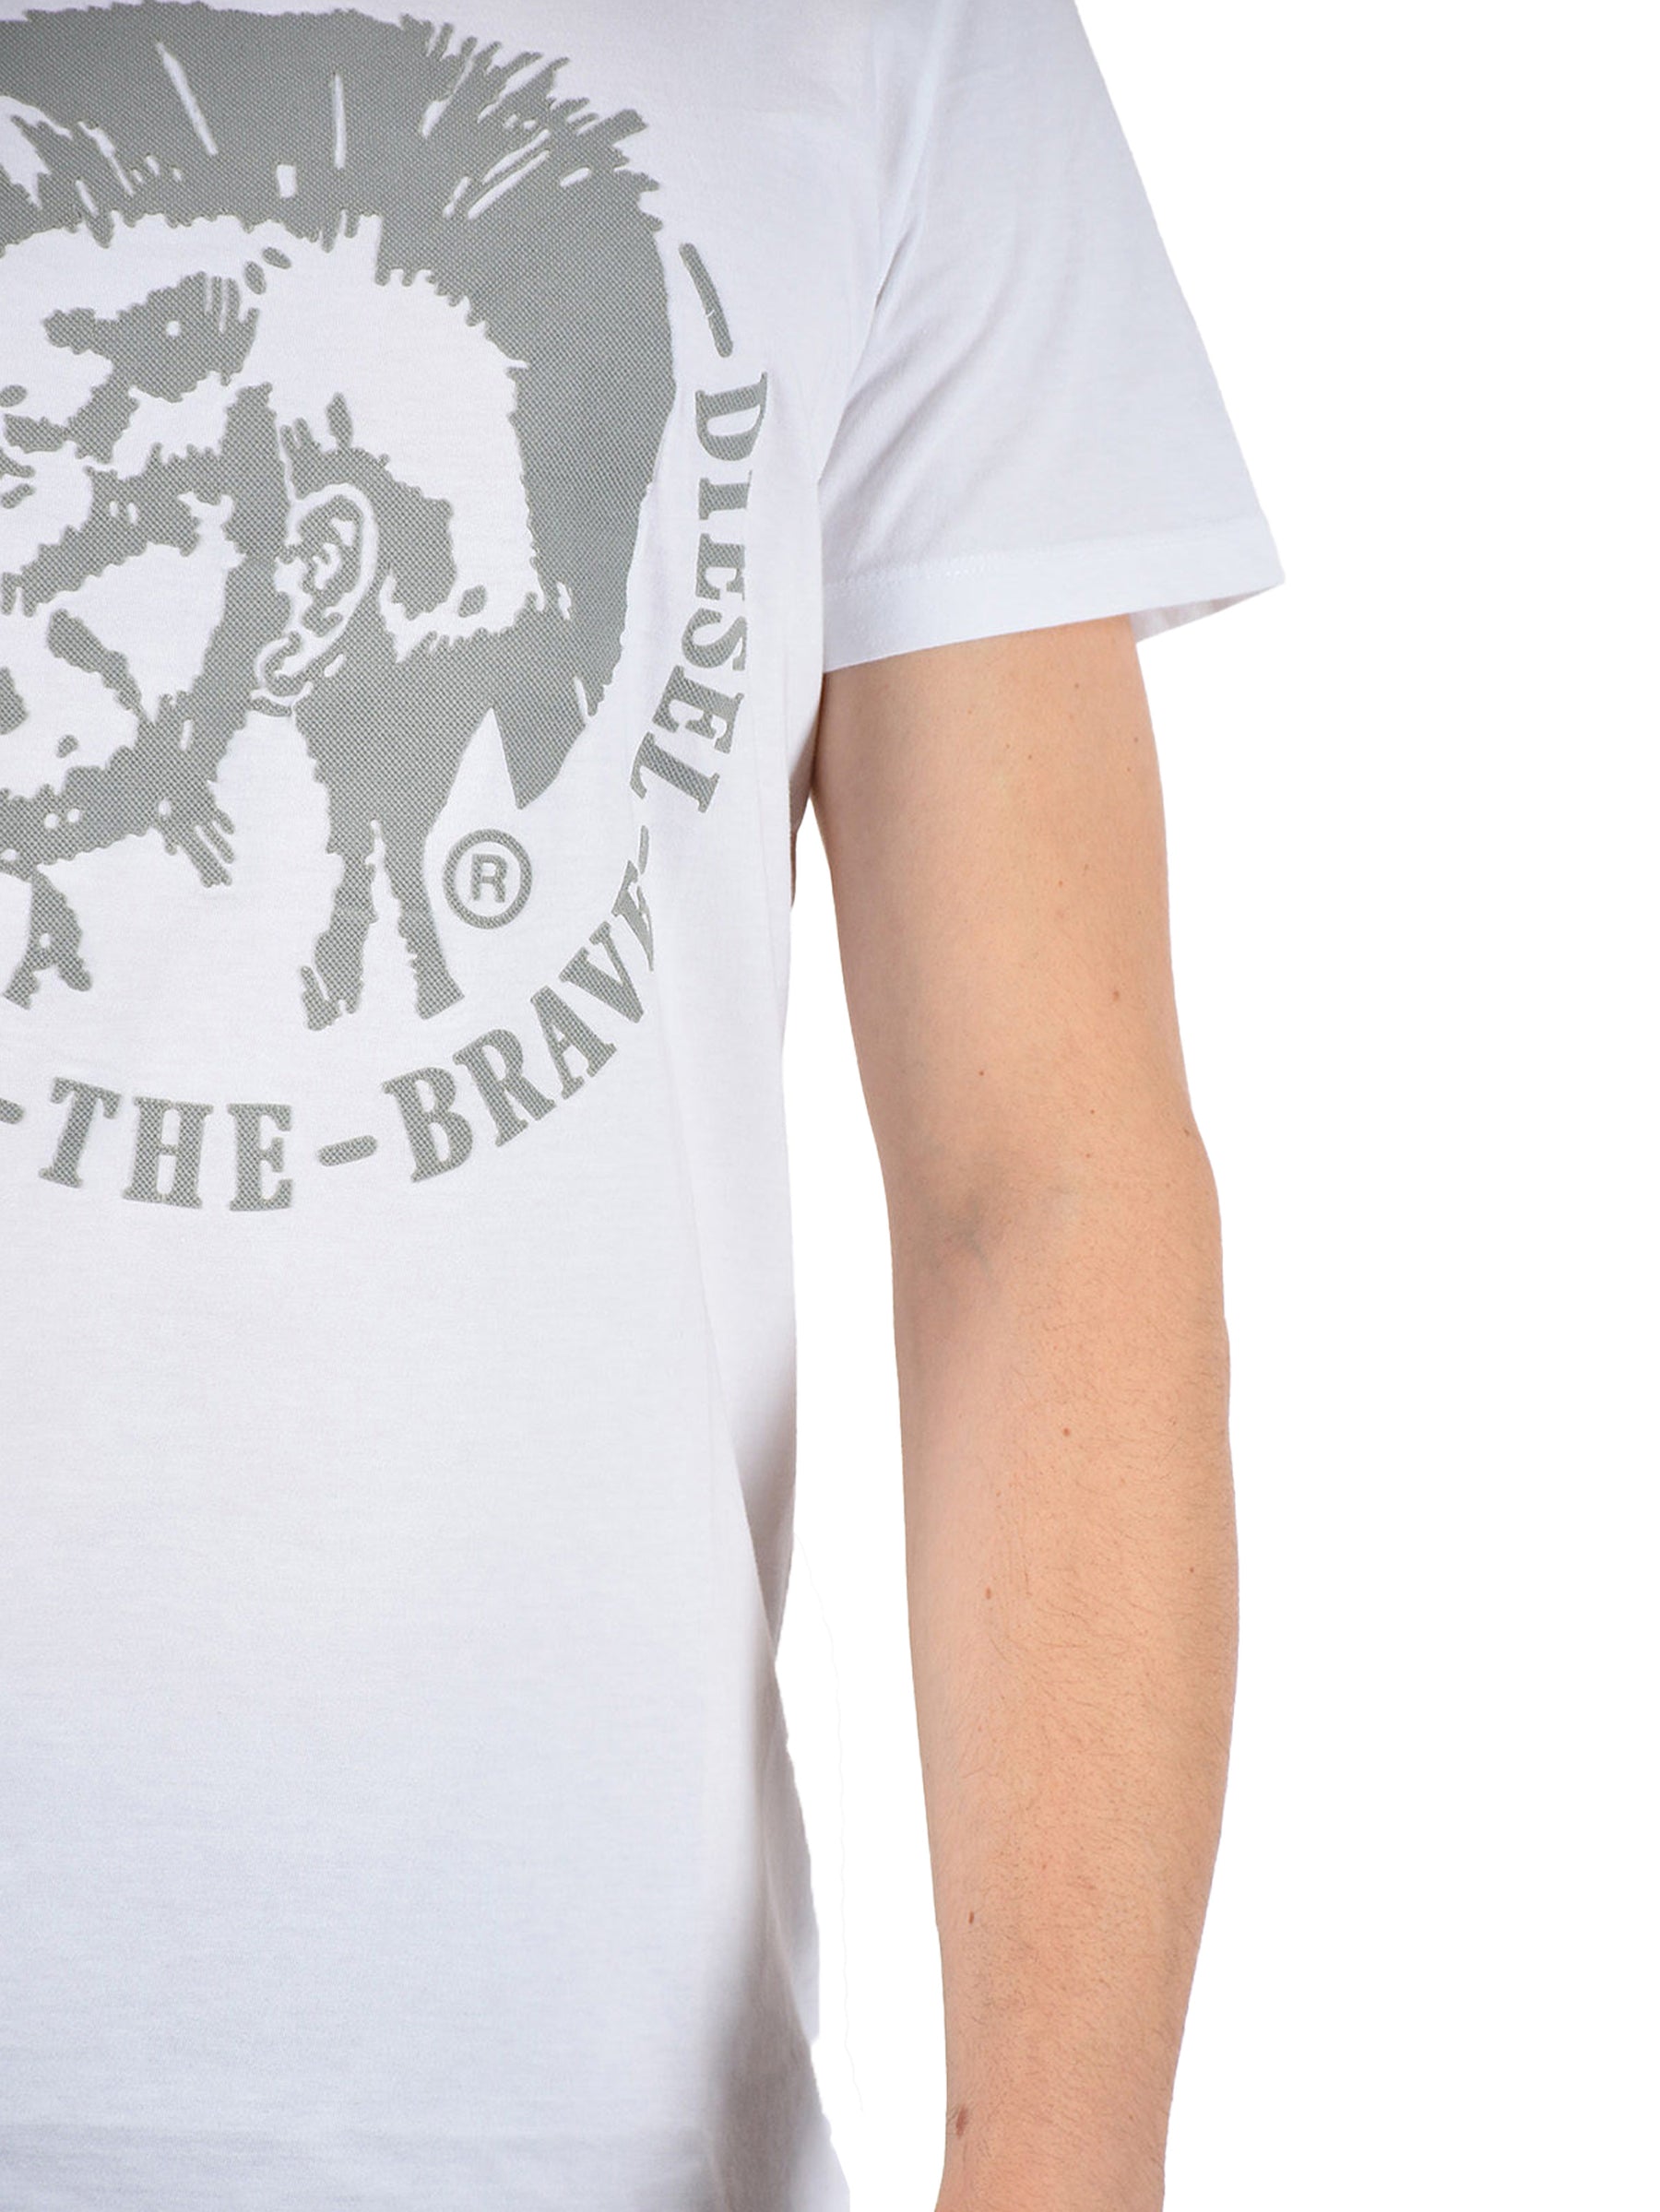 DIESEL THE BRAVE T SHIRT Mens Diesel Brave Casual Short Sleeve Cotton Crew Neck T-Shirt DIESEL RAWDENIM